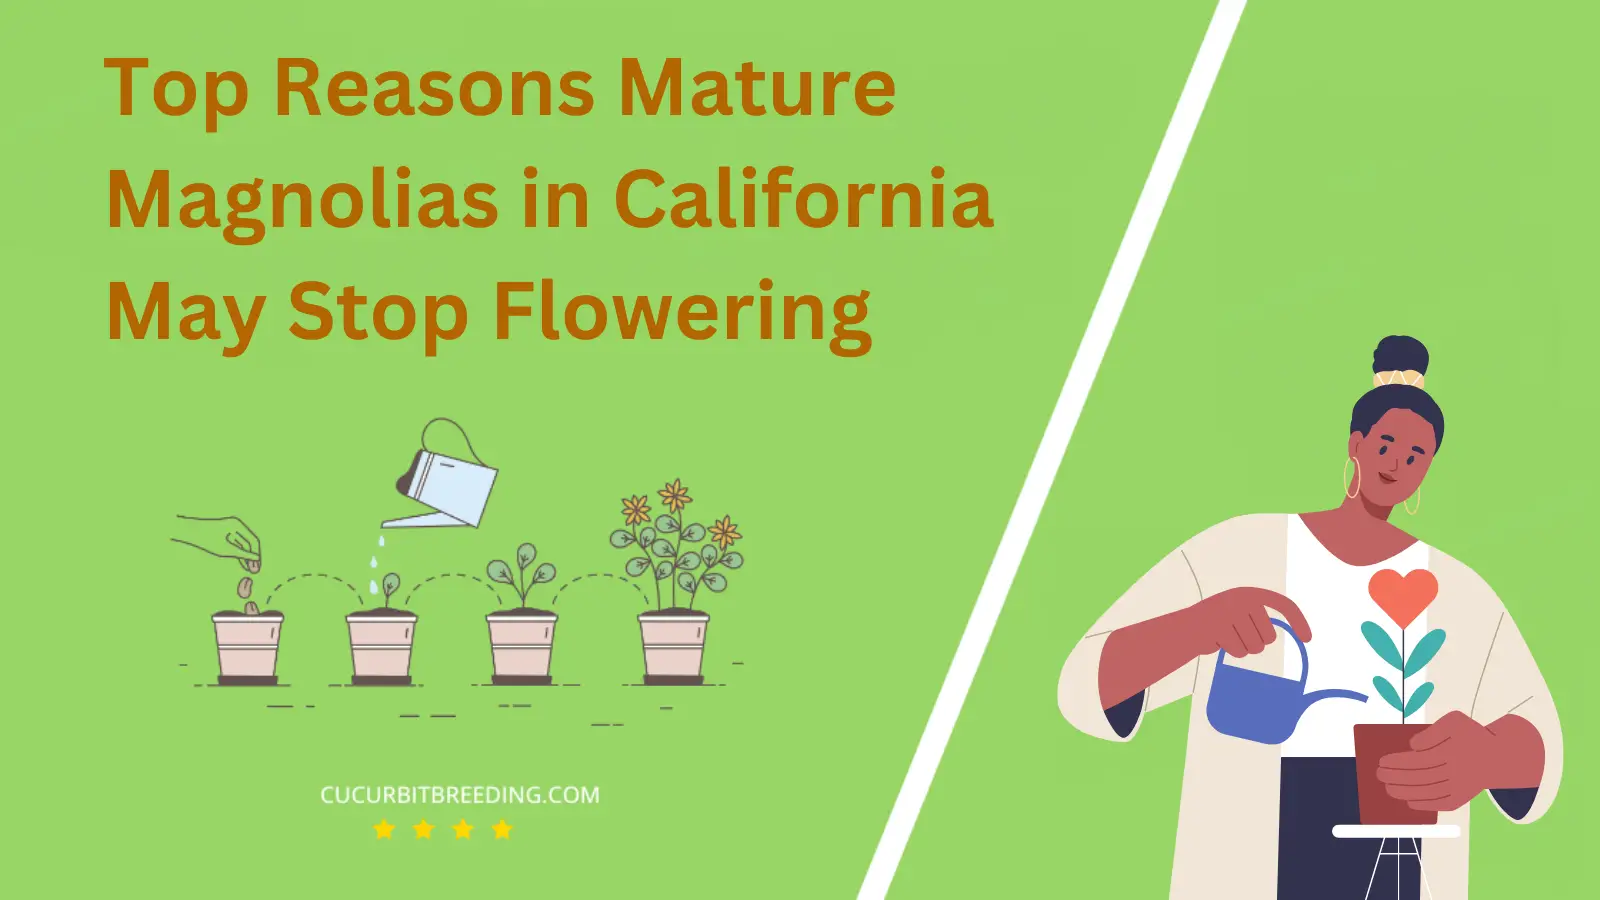 Top Reasons Mature Magnolias in California May Stop Flowering